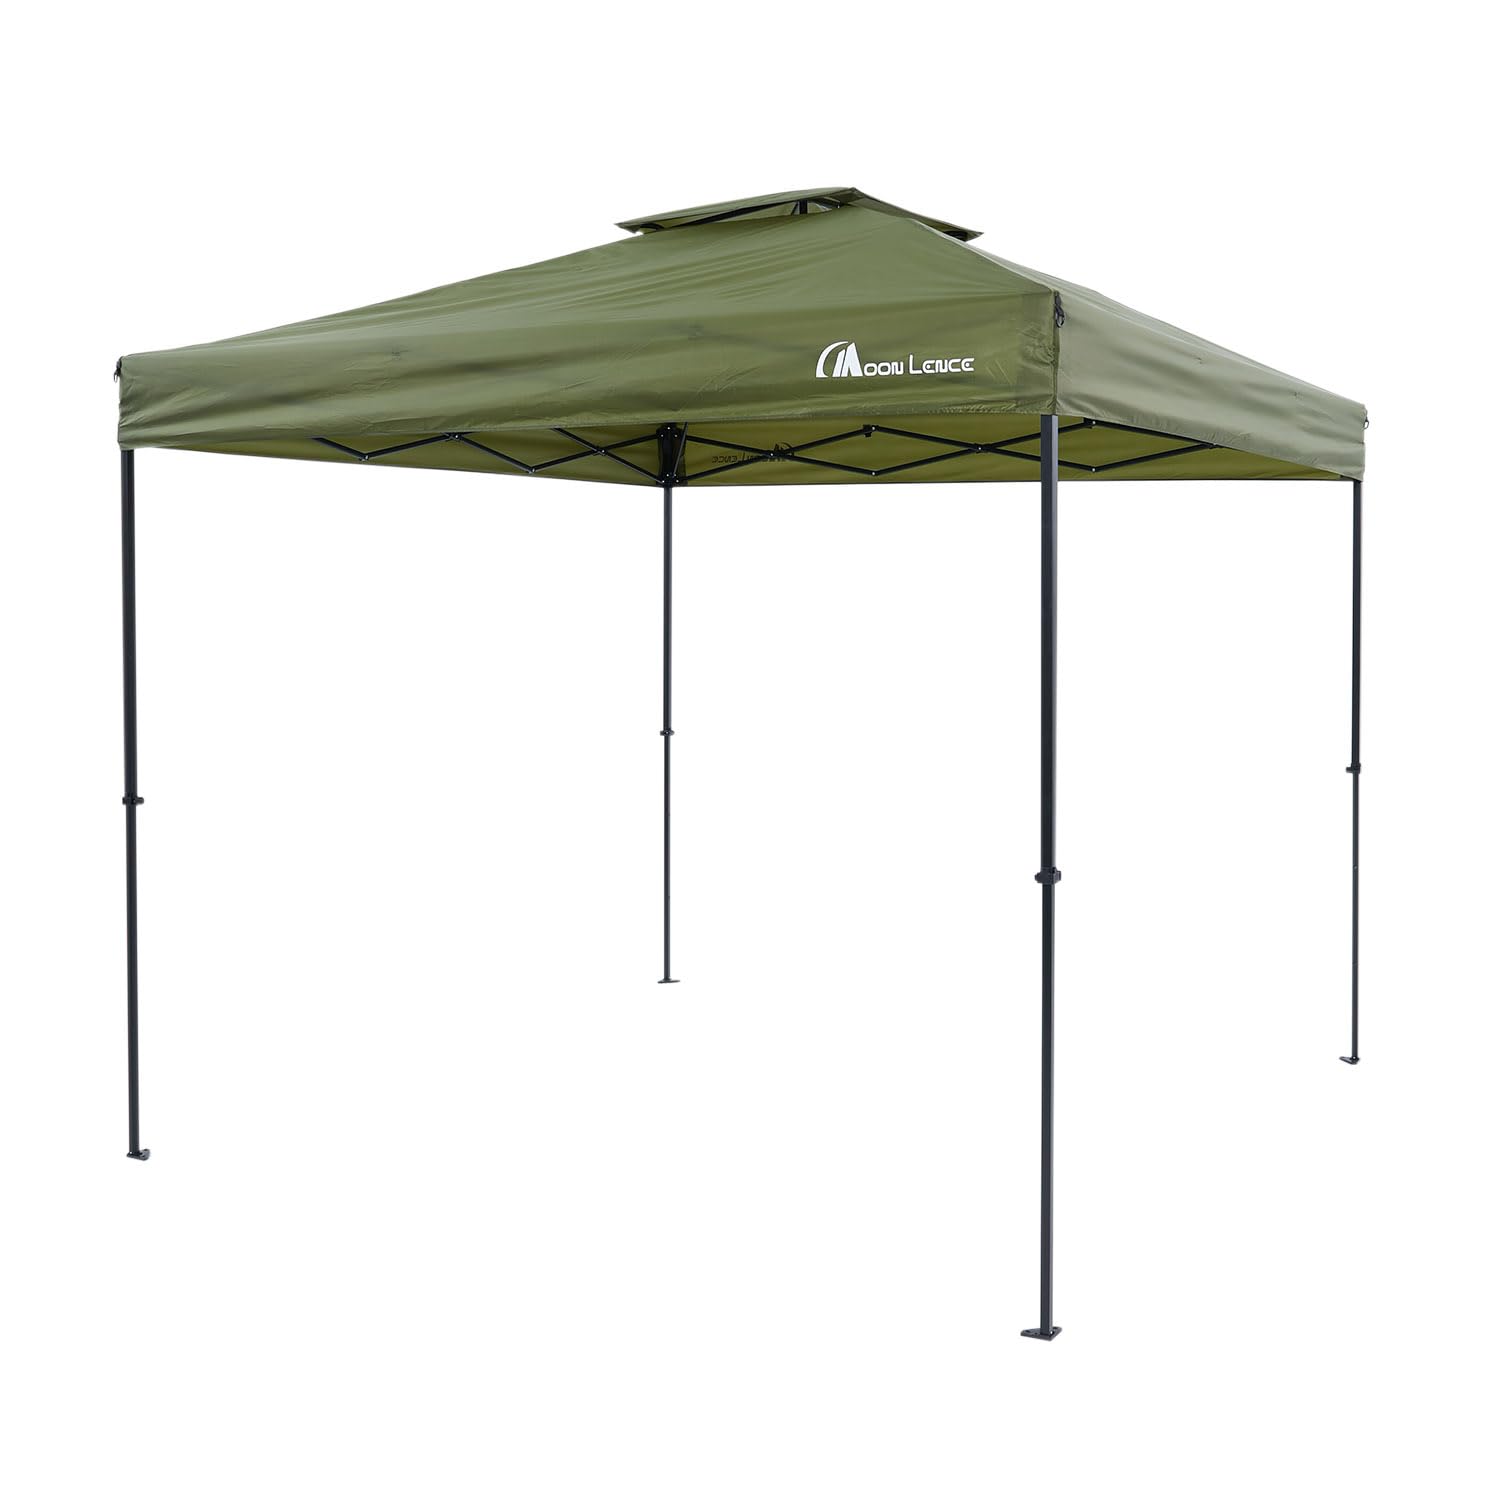 YOYOSTAR MOON LENCE タープテント ワンタッチ 2段階調節 組立て簡単 UVカット 耐水 スチール テント ワンタッチテント キャンプ用品 2.5m グリーン